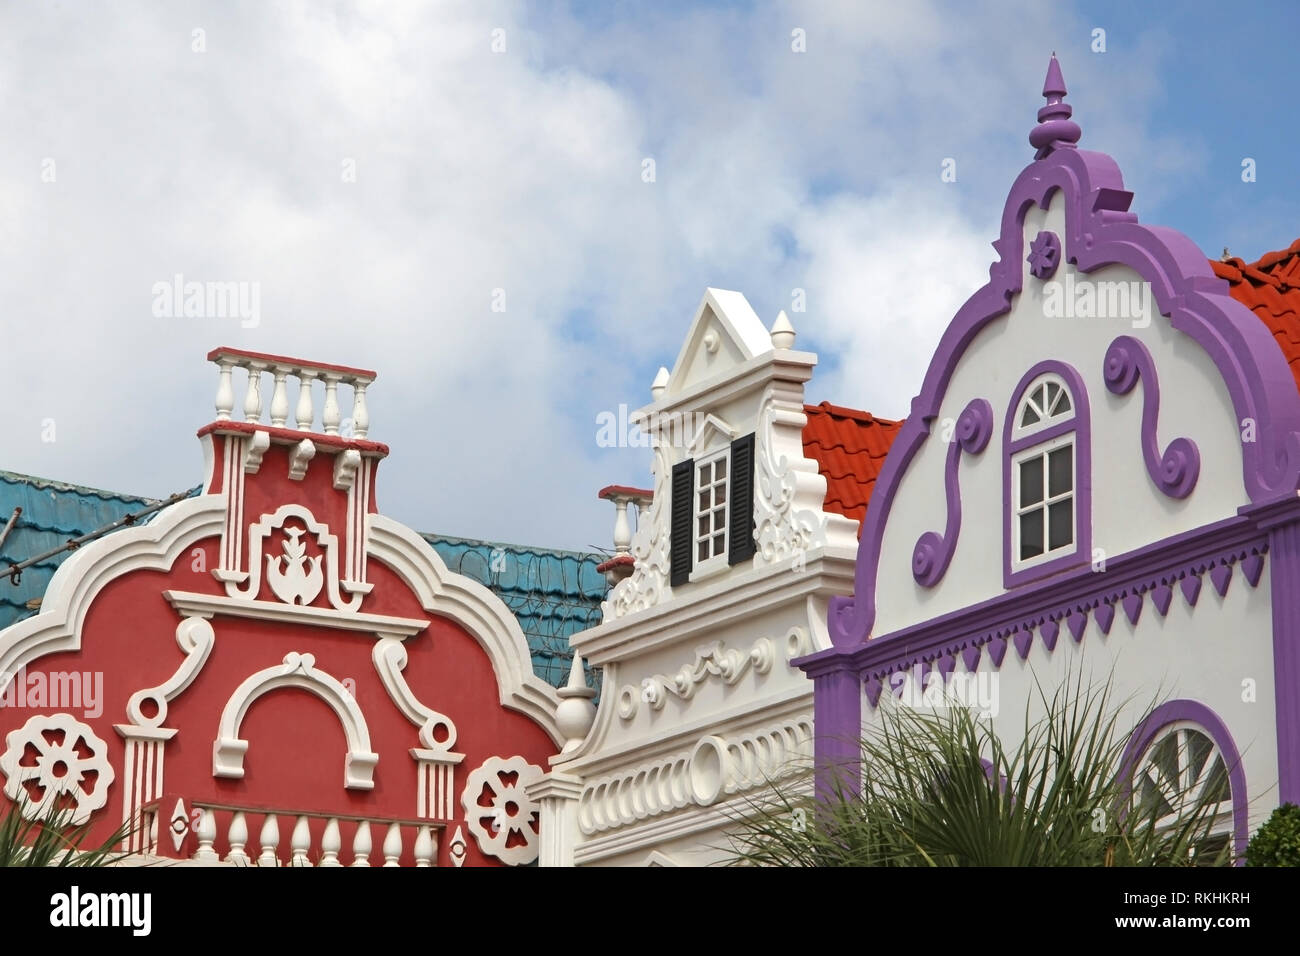 Tipici colori luminosi di colore rosso, verde e viola dipinte di elementi architettonici di Aruba, Curacao e Bonaire, dei Caraibi. Foto Stock